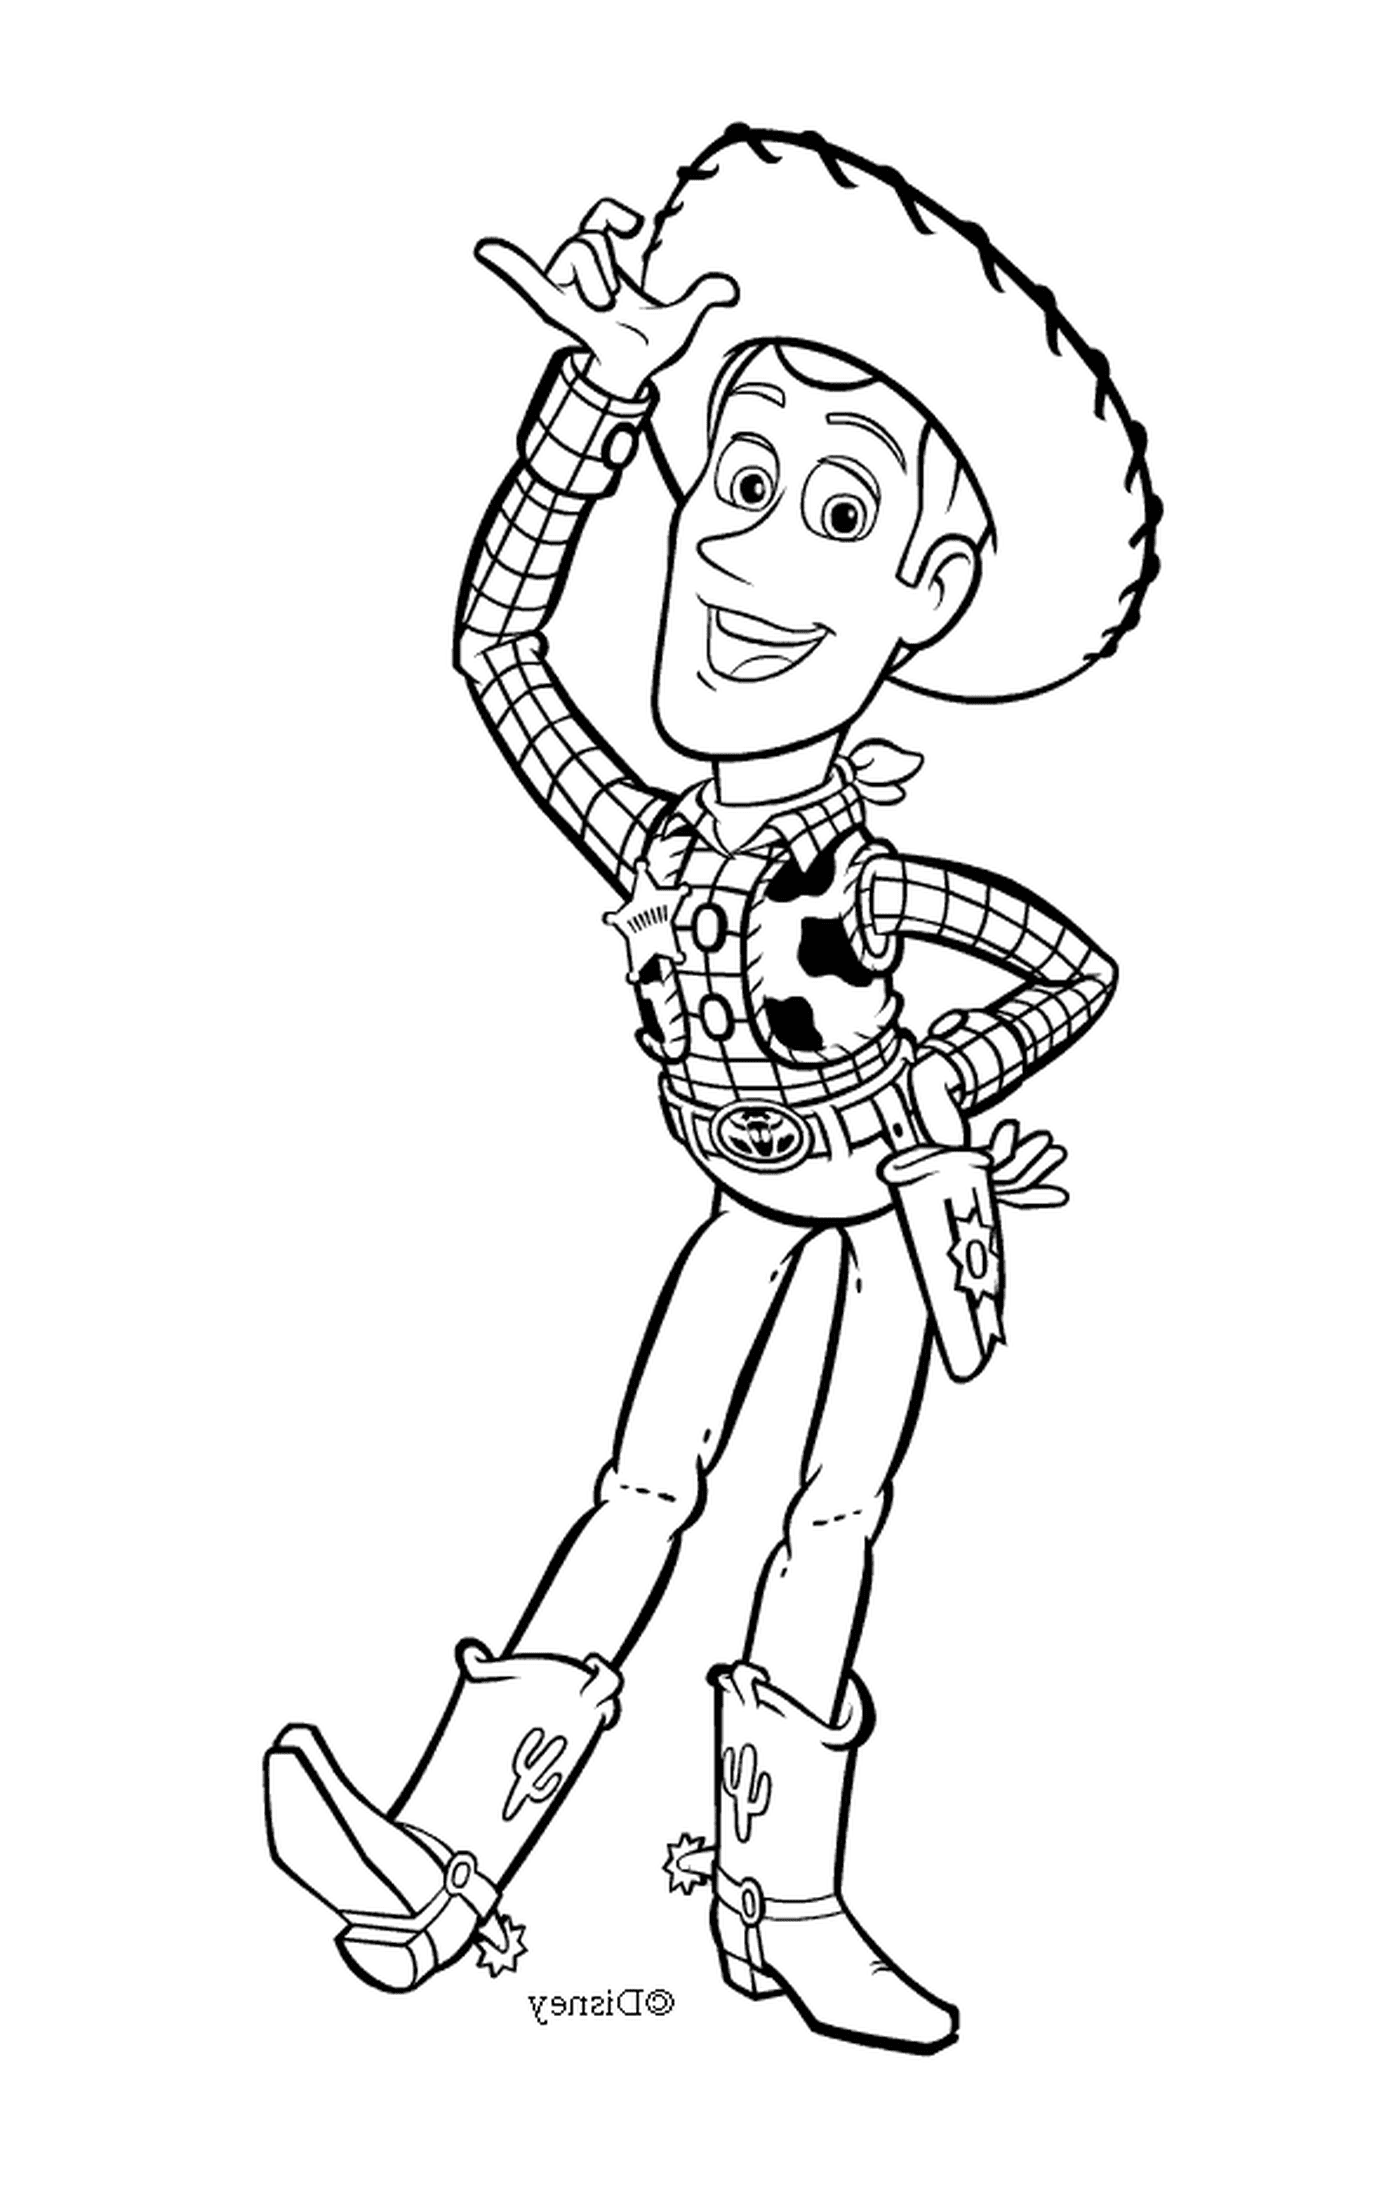  Woody, der unerschrockene Sherif 